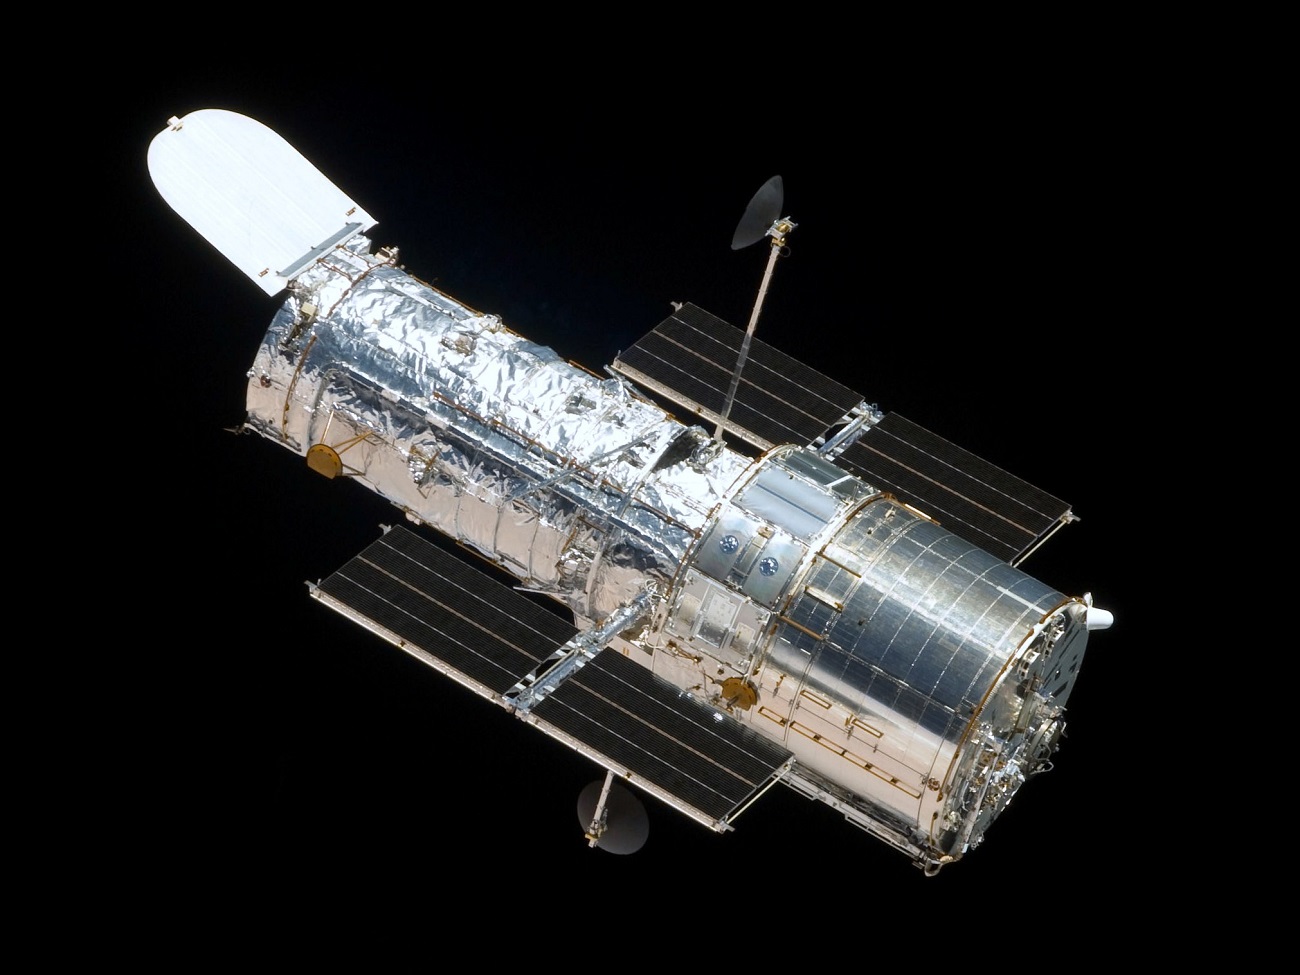 Kosmiczny Teleskop Hubble’a i odległa mgławica. Zobaczcie zdjęcia jednej z tamtejszych protogwiazd